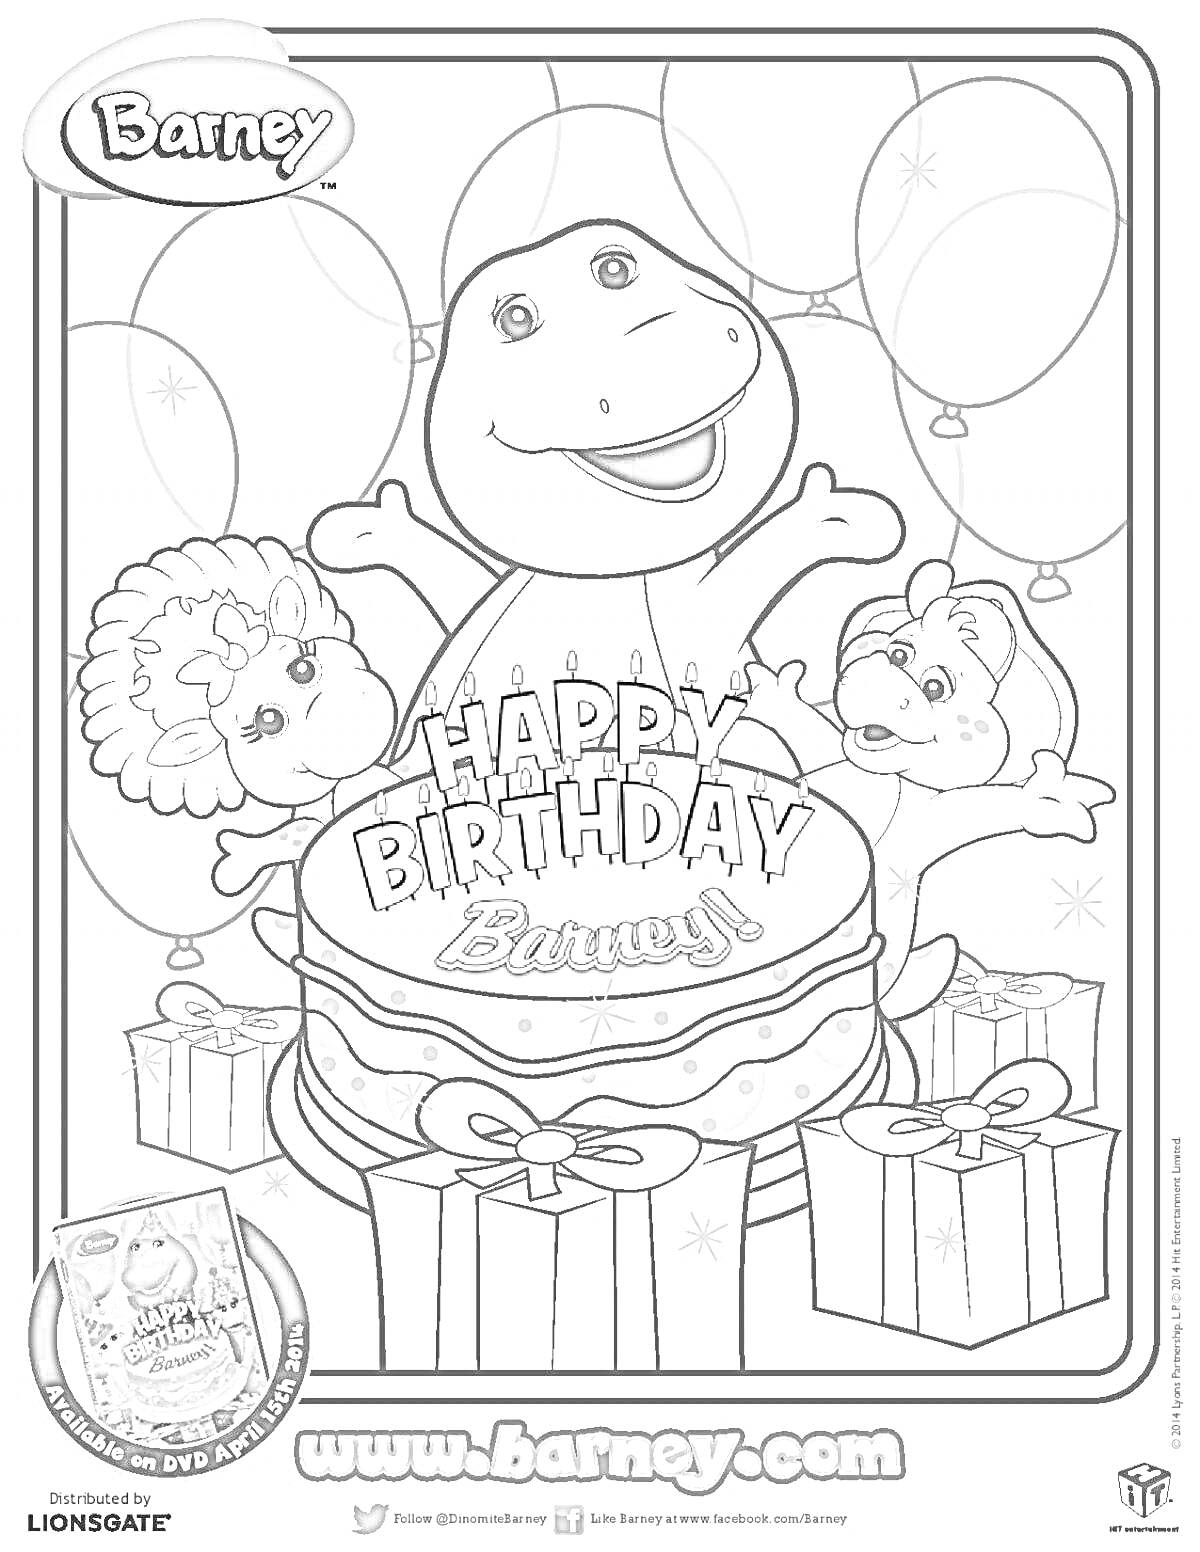 Раскраска Барни и друзья празднуют день рождения с тортом и подарками